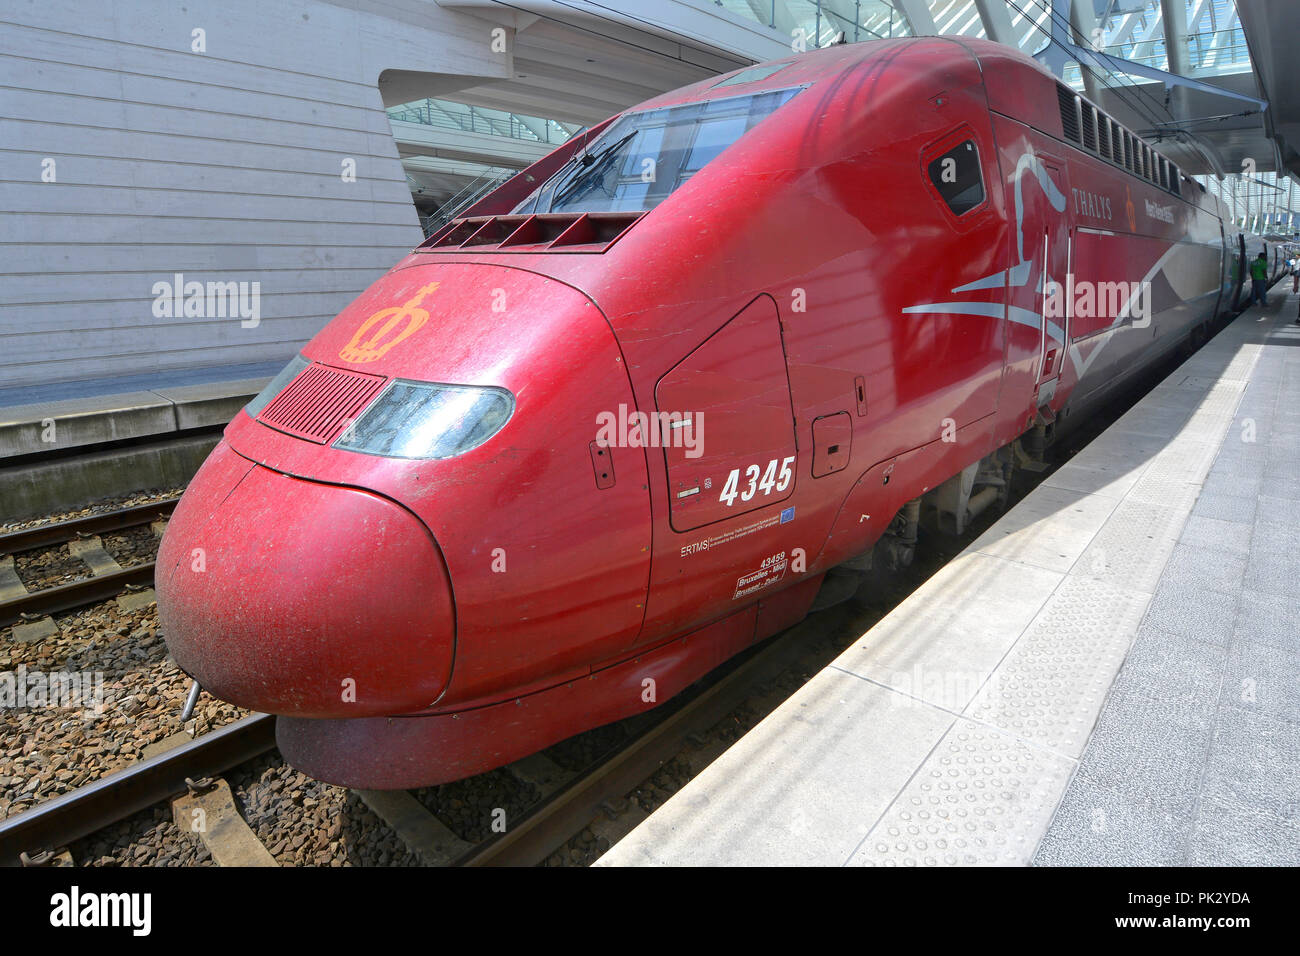 Aerodinamica sul trasporto pubblico SNCF TGV Thalys PBKA semplificata locomotiva elettrica ad alta velocità treno passeggeri a Liegi Belgio UE stazione ferroviaria Foto Stock